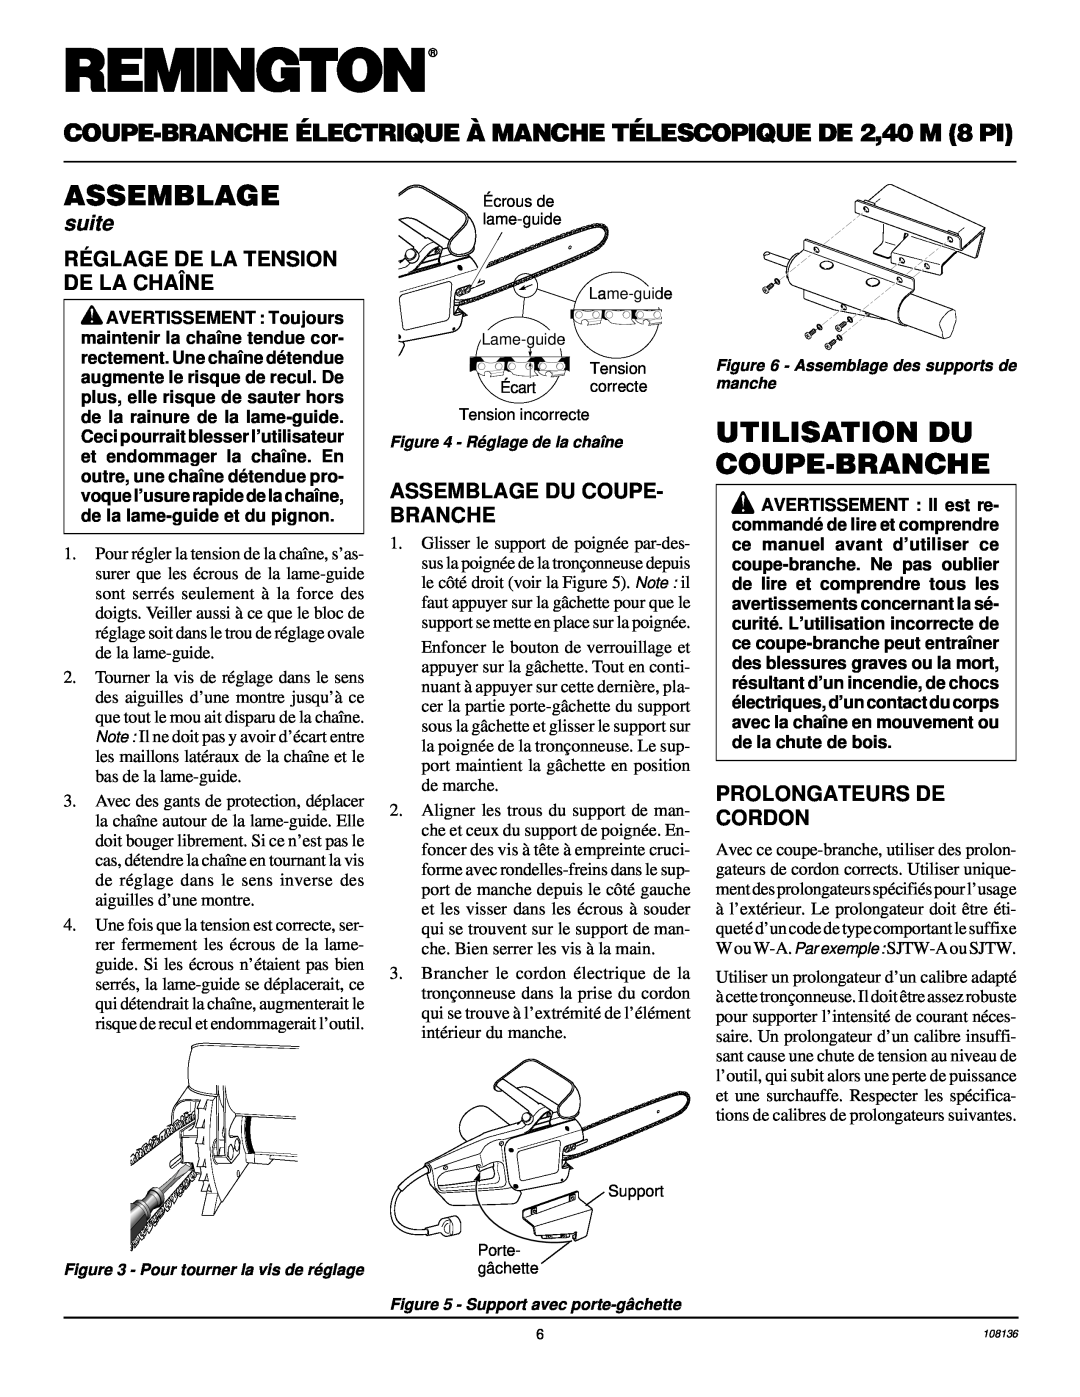 Remington RPS96 Utilisation Du Coupe-Branche, Ré Glage De La Tension De La Chaîne, Assemblage Du Coupe- Branche, suite 